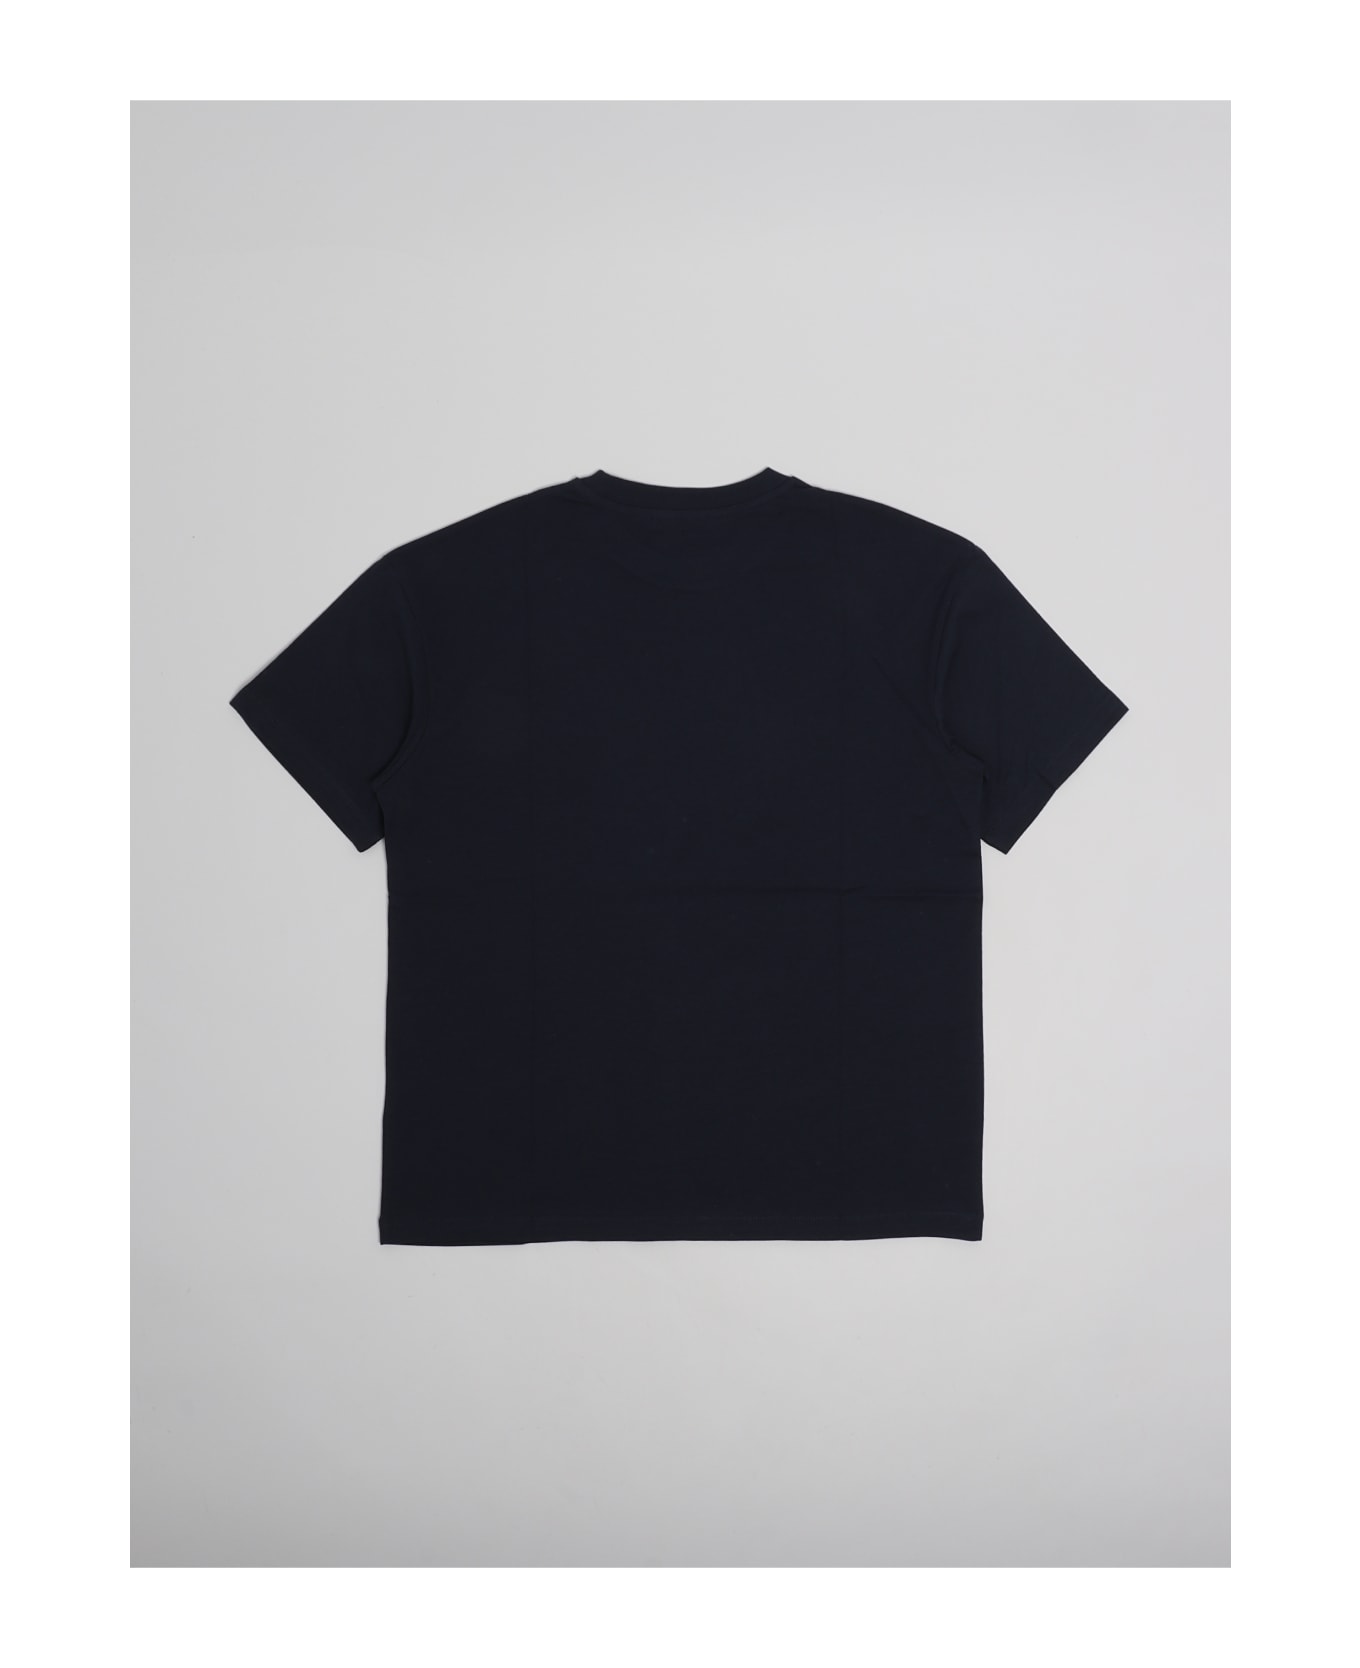 Balmain T-shirt T-shirt - BLU